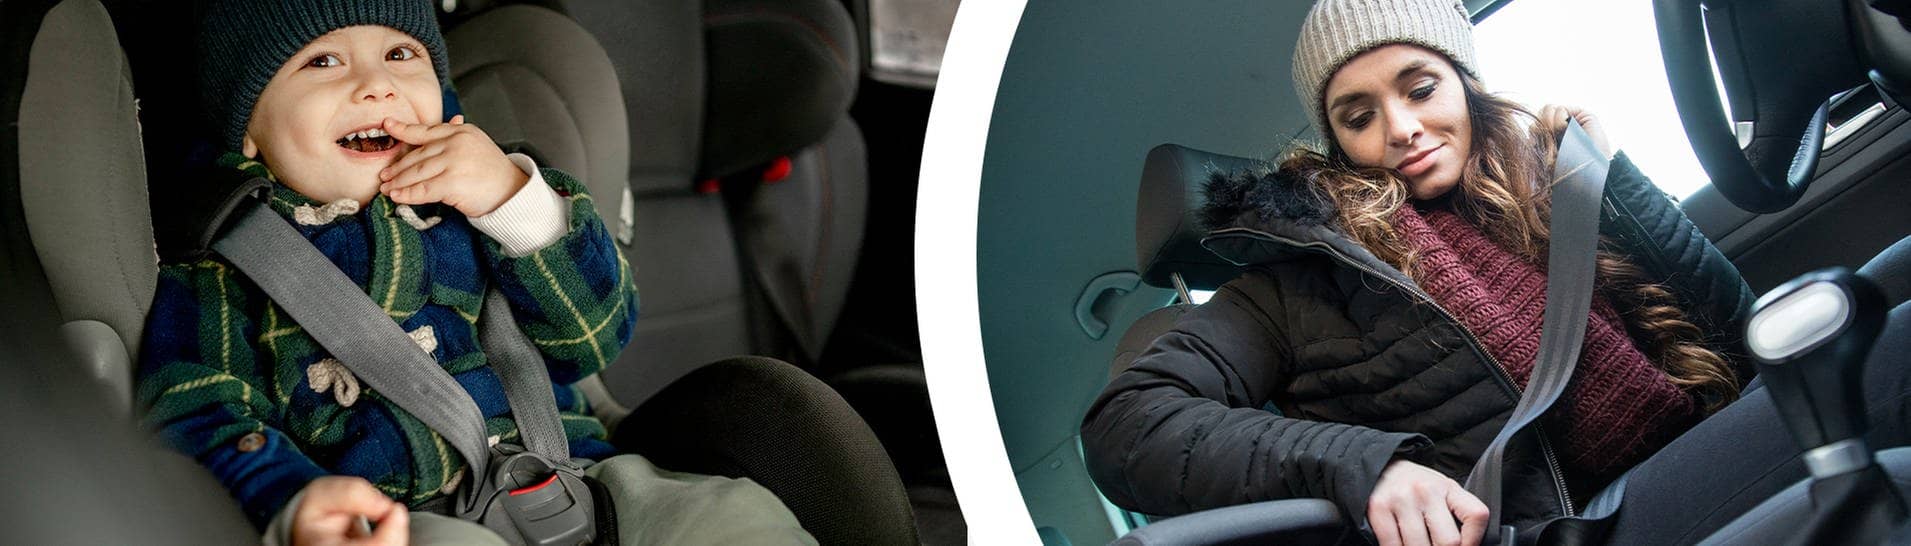 Happy boy in car safety seat model released, eine junge Frau schnallt sich an